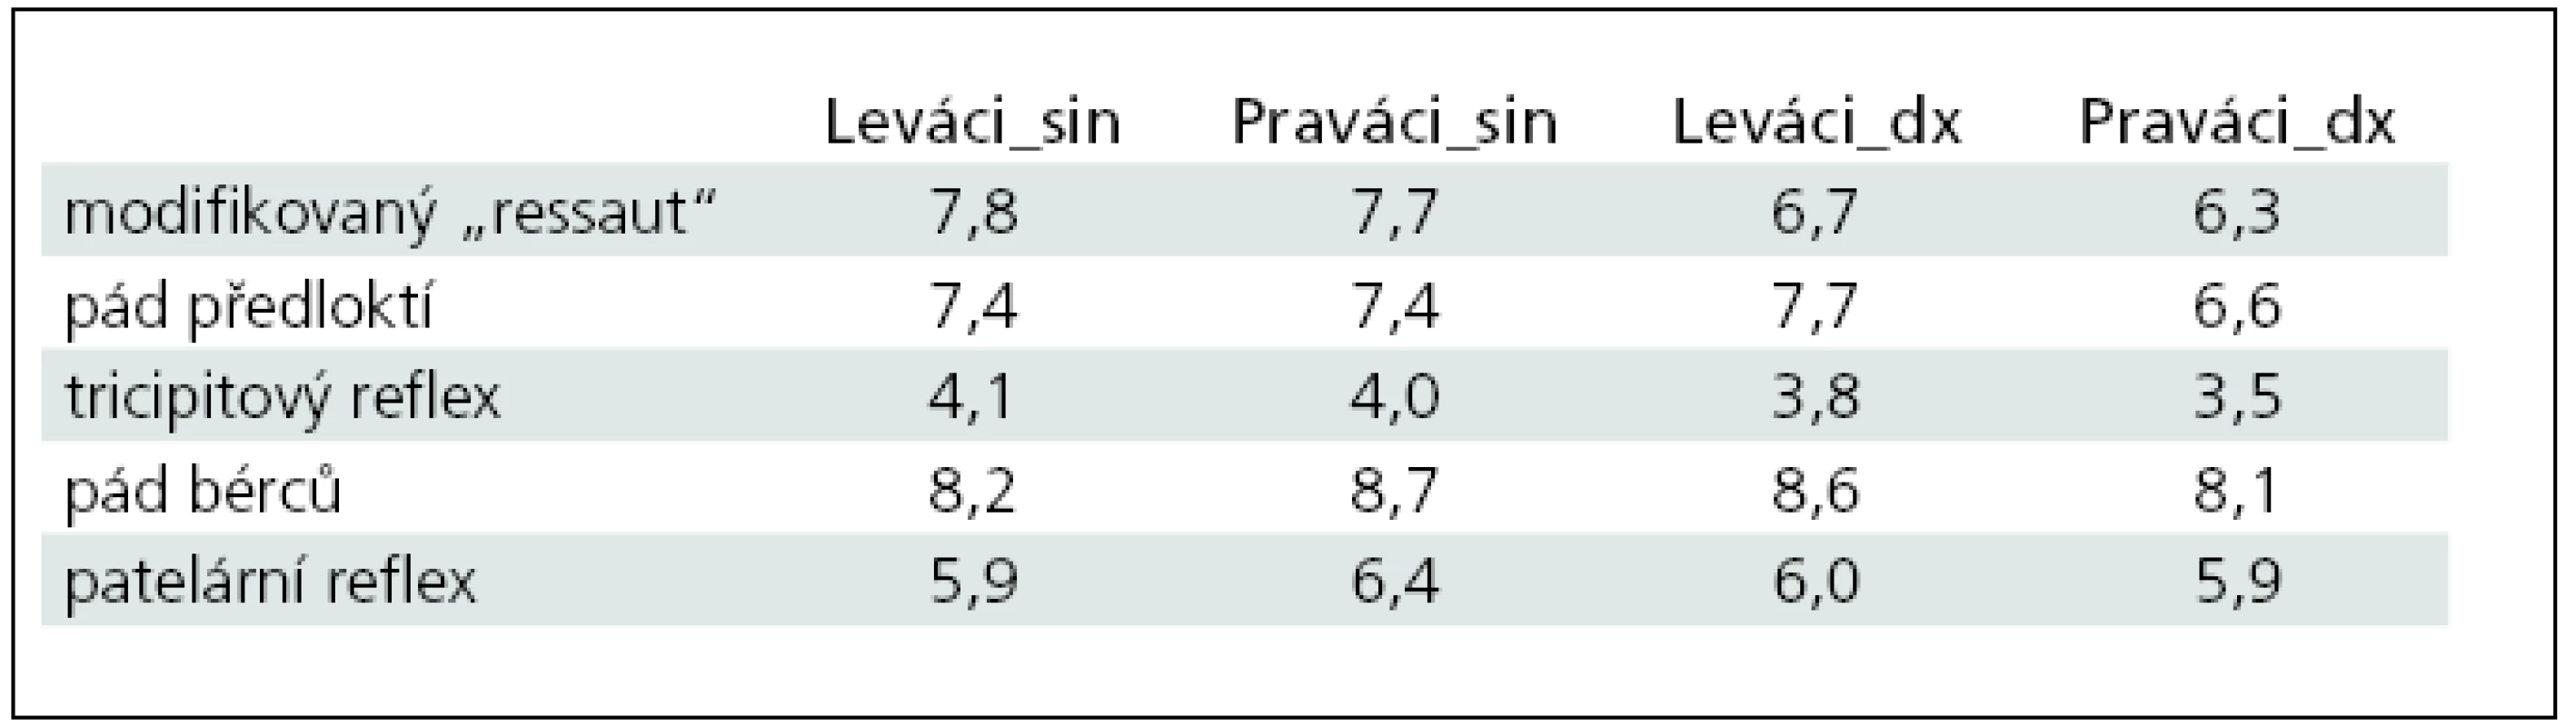 Průměrné počtu kyvů pro Praváky a Leváky zjištěné na levých (sin) a pravých (dx) končetinách při jednotlivých klinických zkouškách.